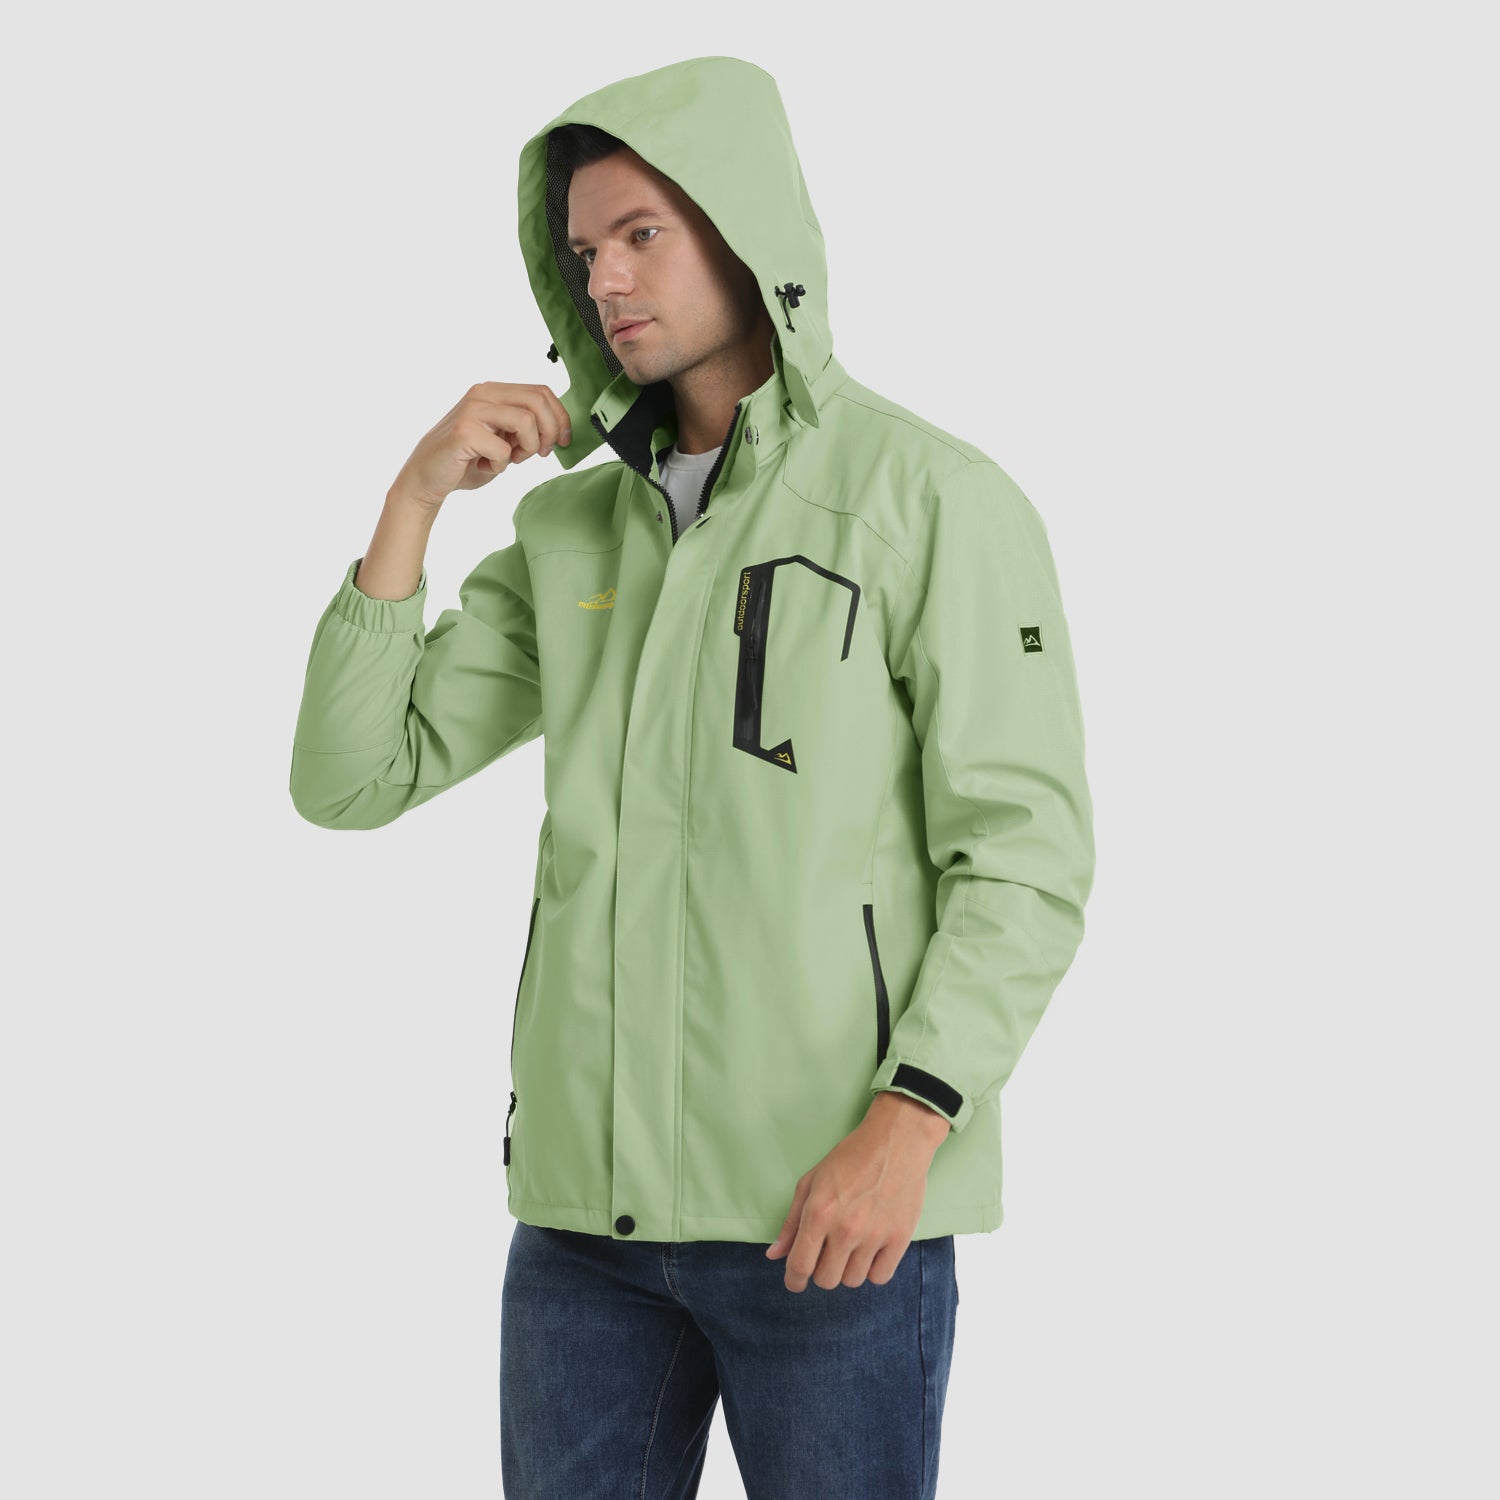 MAGCOMSEN Men's Outdoor Jacket 4 Pockets Hooded Windproof Jacket Waterproof  Rain